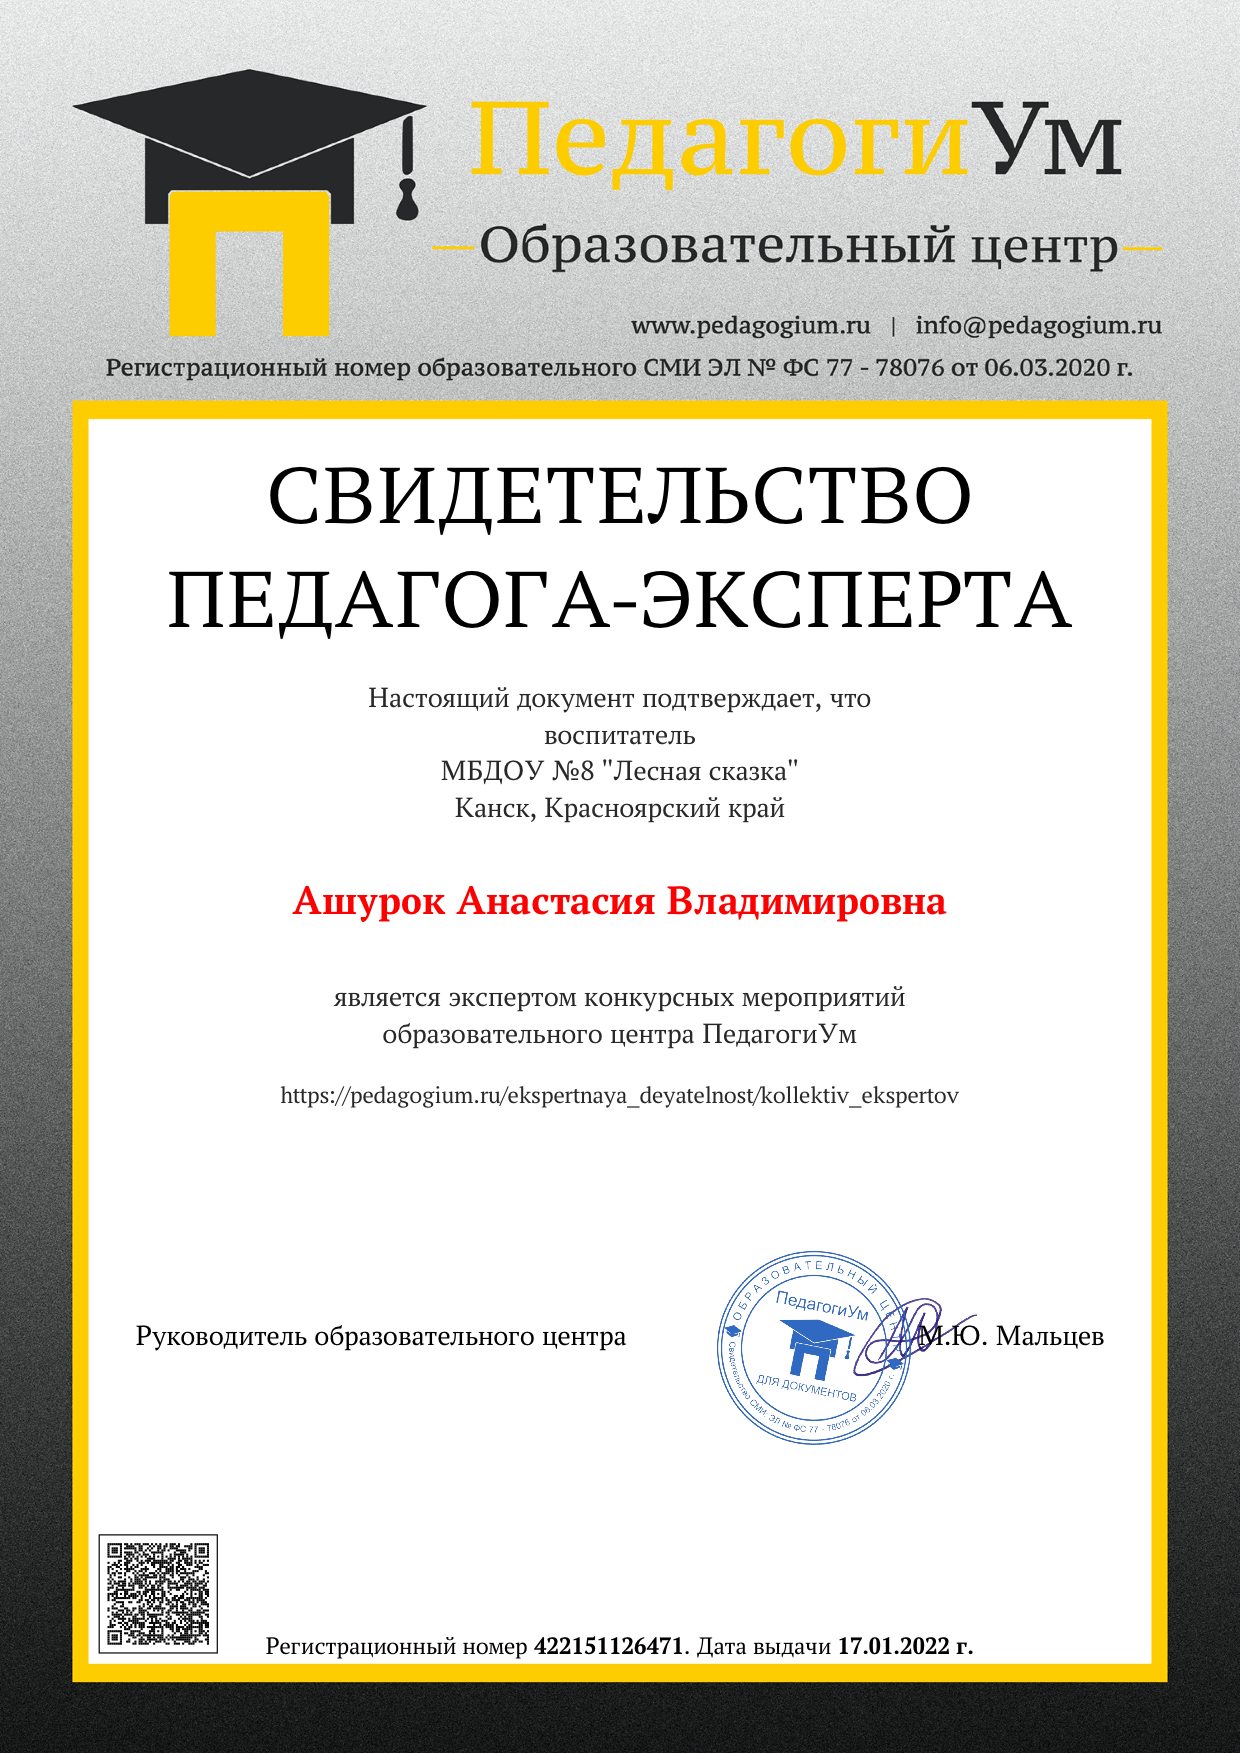 Образец документа за участие в экспертной деятельности центра ПедагогиУм.